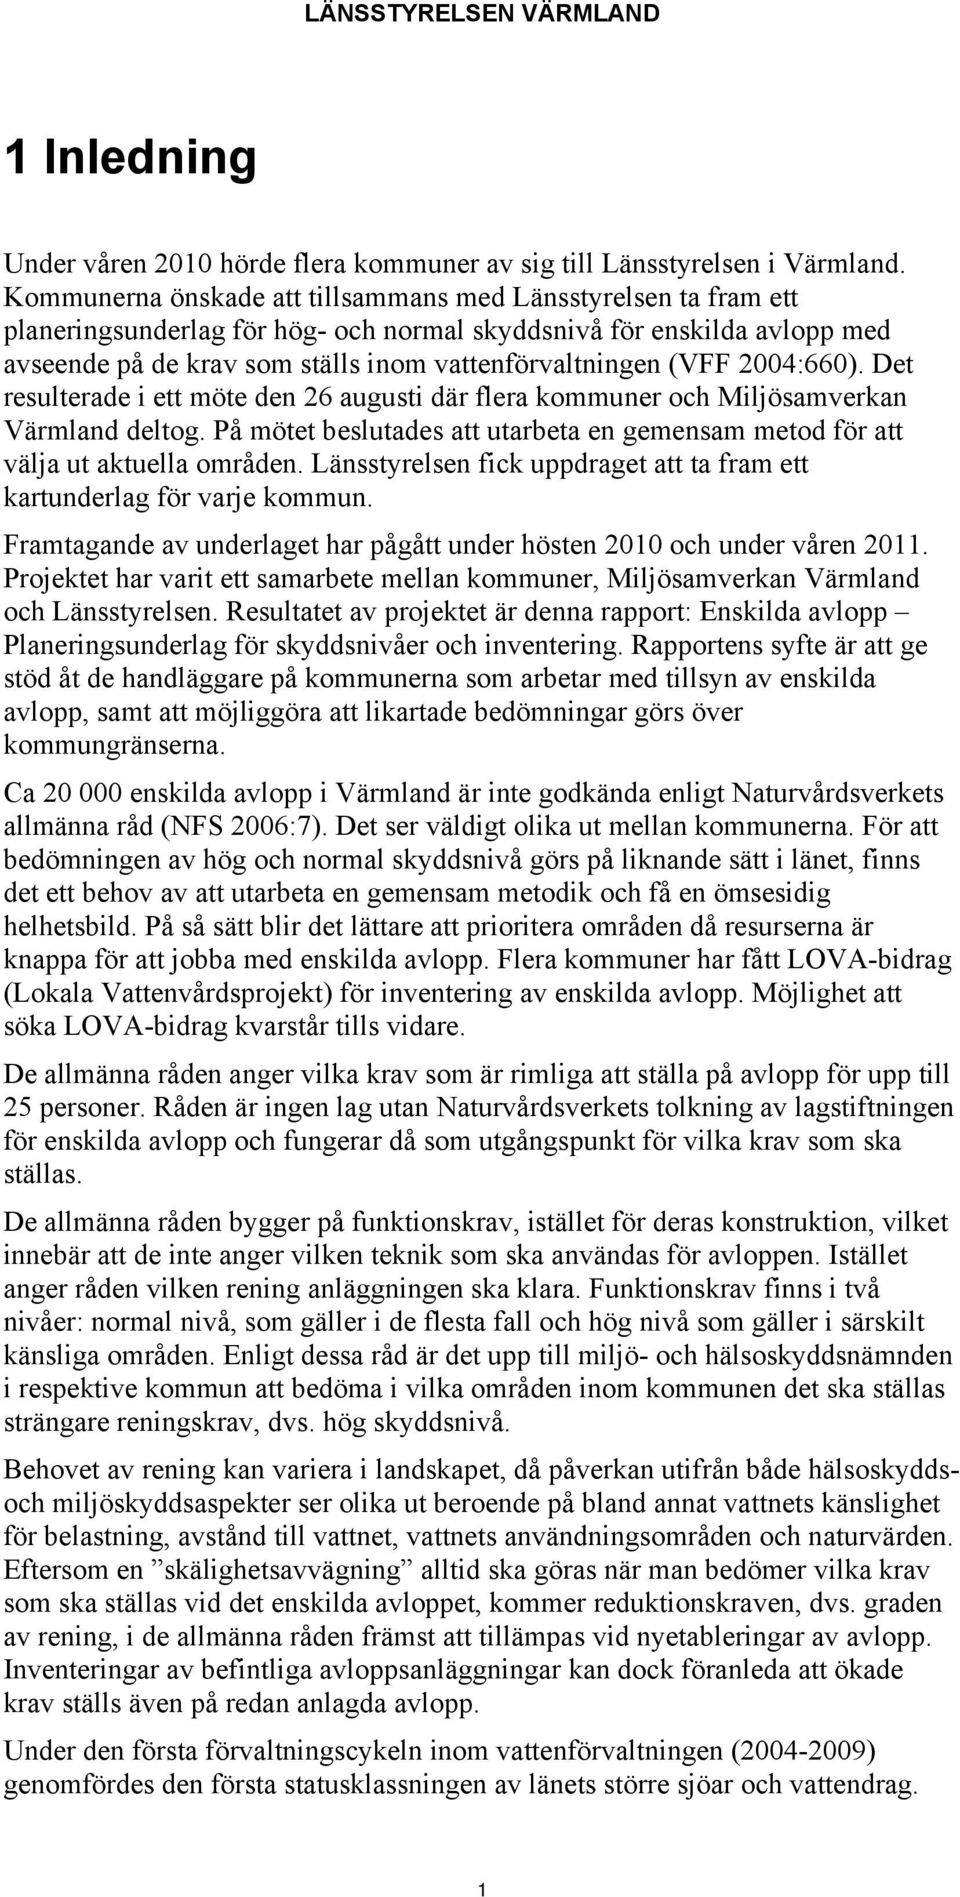 2004:660). Det resulterade i ett möte den 26 augusti där flera kommuner och Miljösamverkan Värmland deltog. På mötet beslutades att utarbeta en gemensam metod för att välja ut aktuella områden.